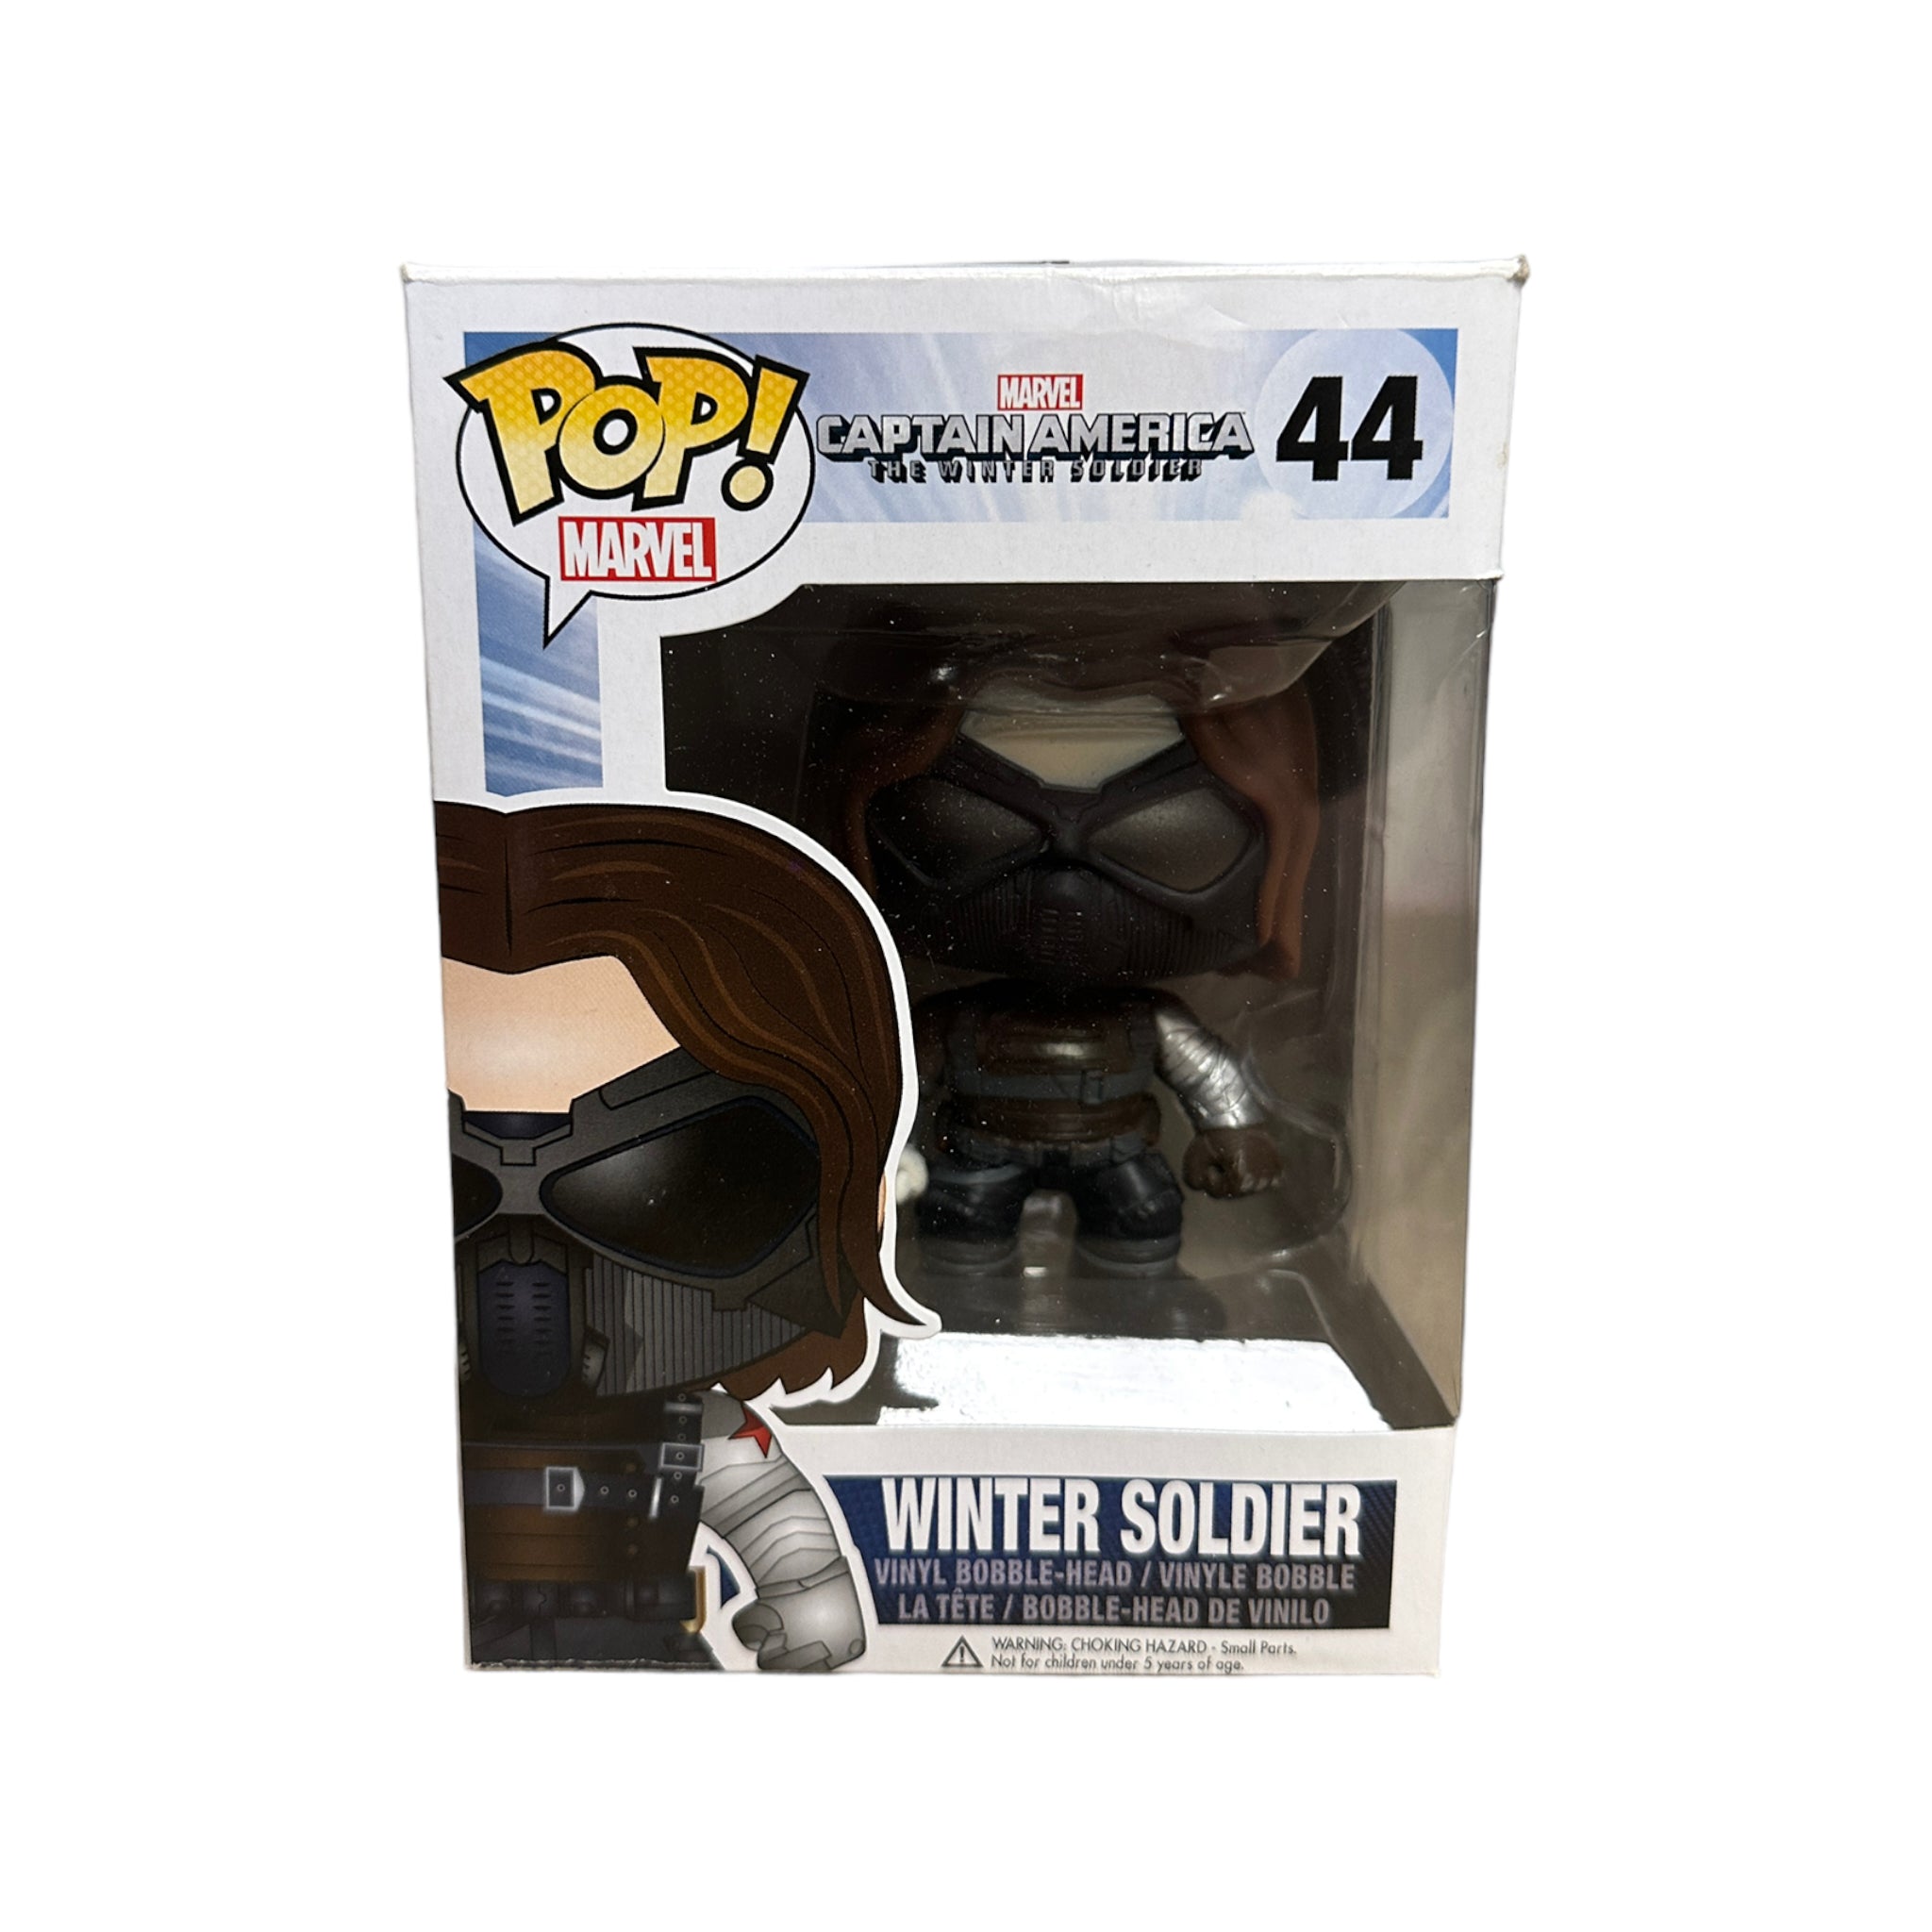 Winter Solider #44 (w/ Goggles) Funko Pop! - Captain America: The Winter Soldier - 2014 Pop! - Condition 6/10